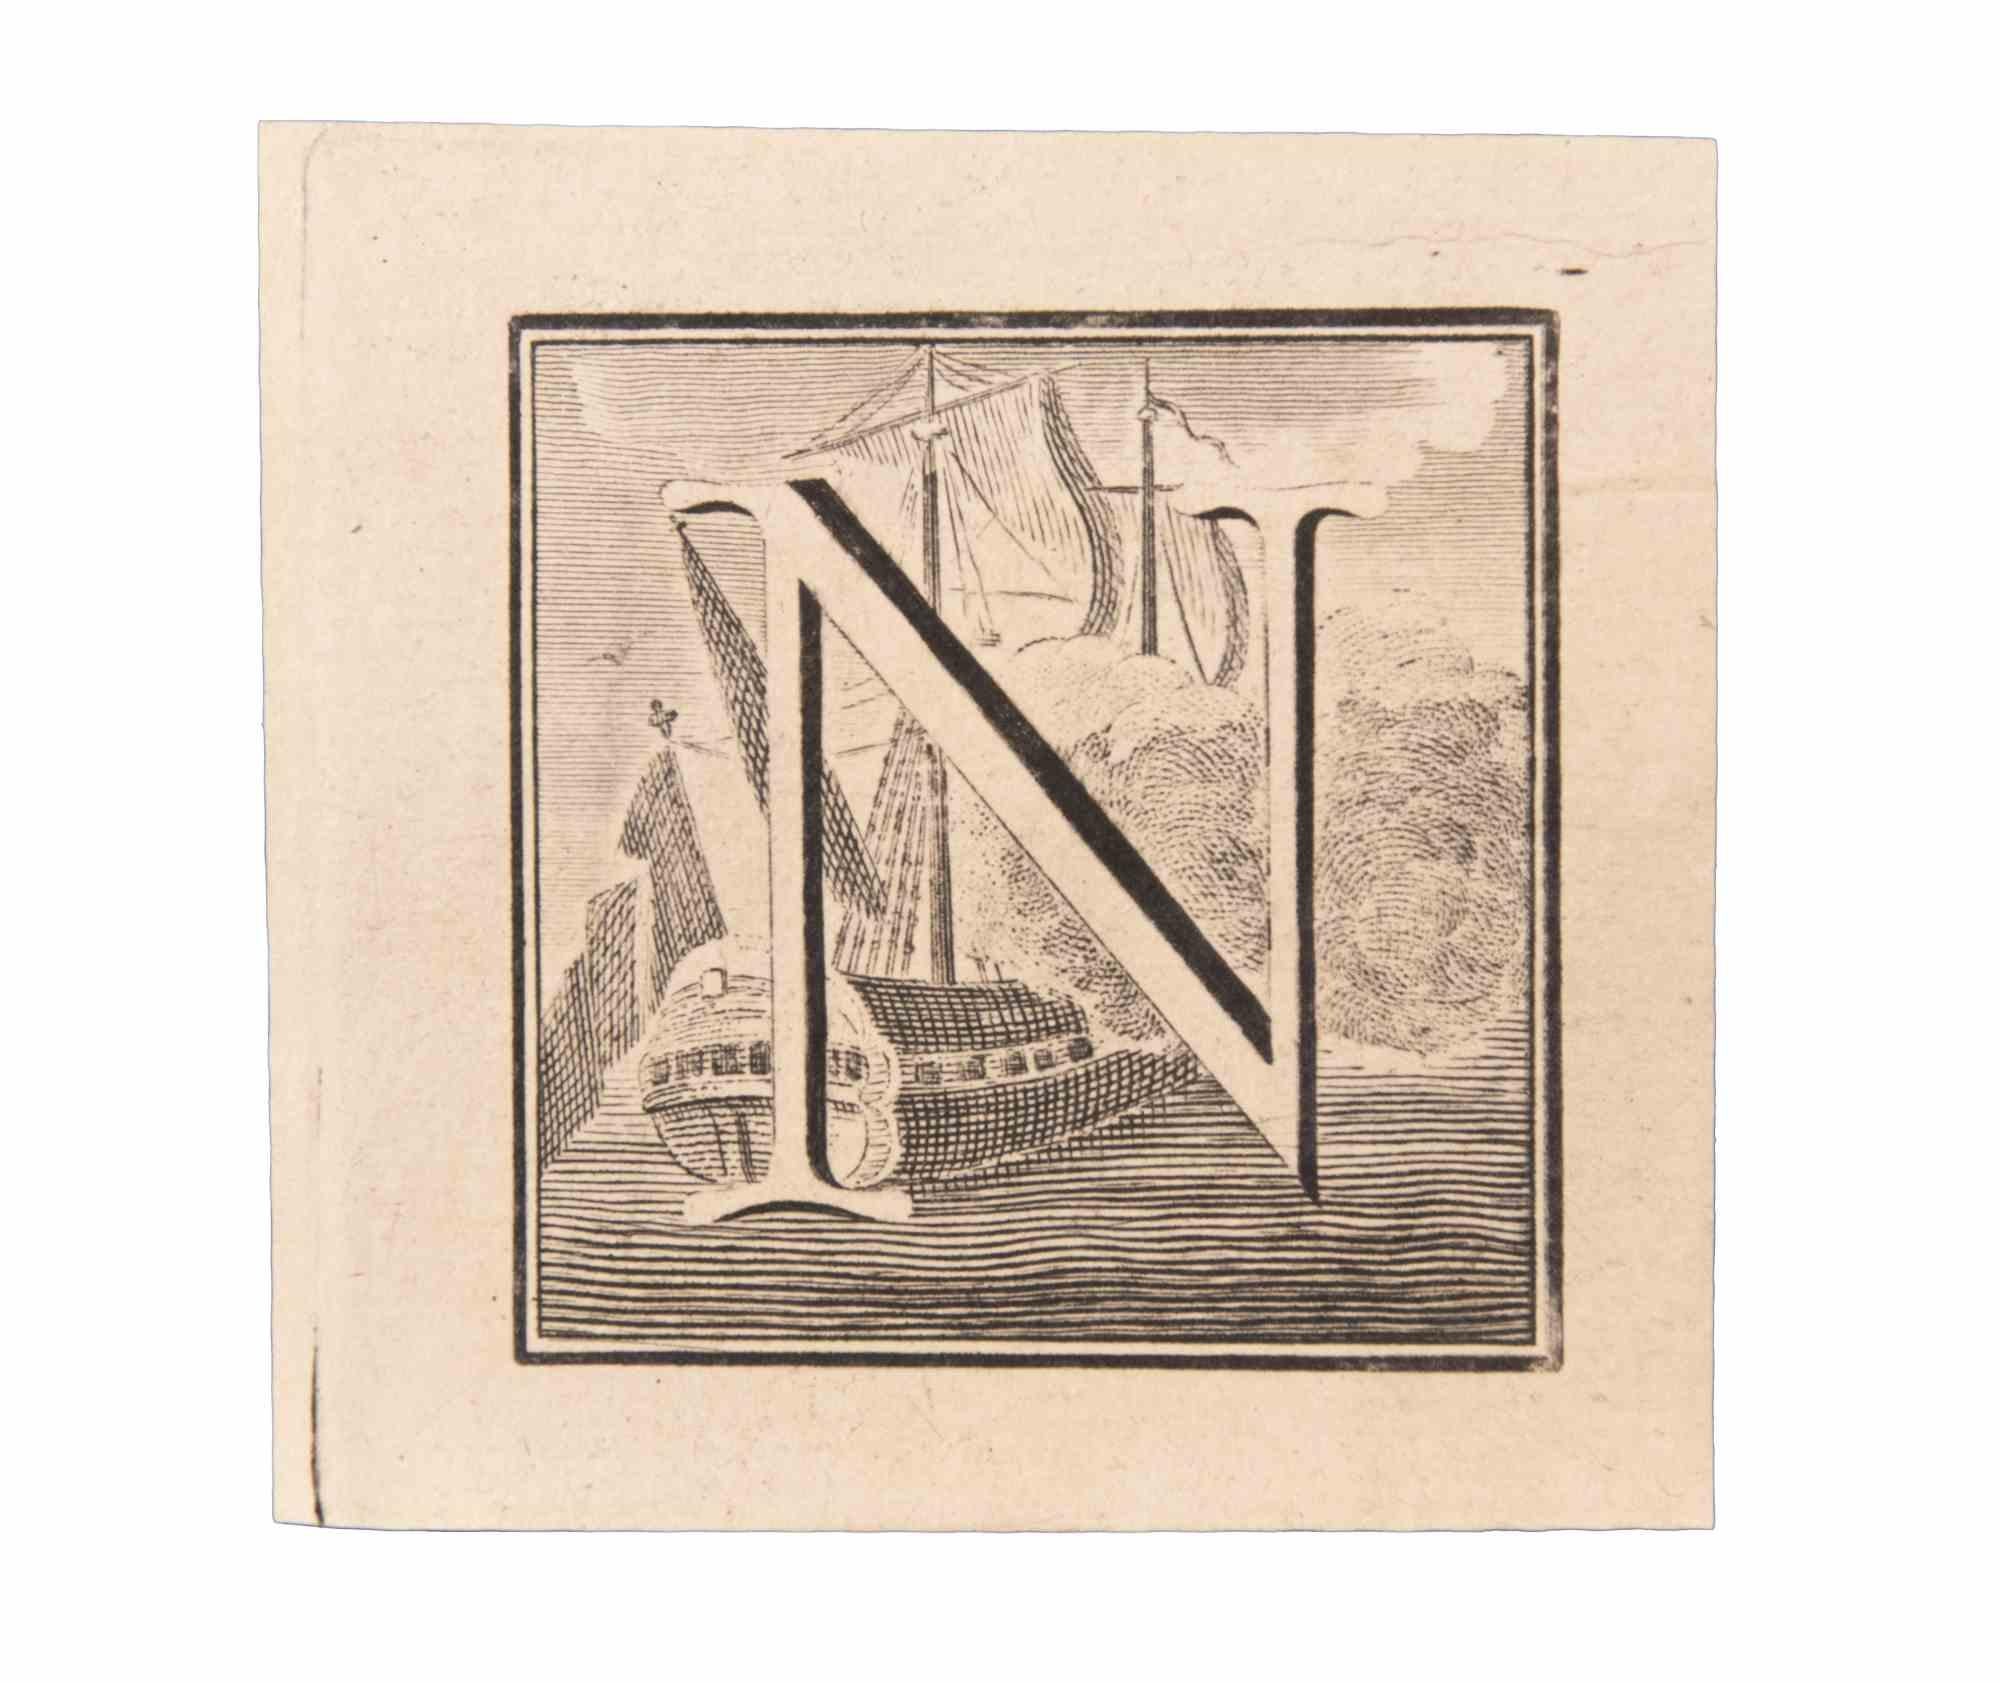 La lettre N est une gravure réalisée par Luigi Vanvitelli du 18ème siècle.

La gravure appartient à la suite d'estampes "Antiquités d'Herculanum exposées" (titre original : "Le Antichità di Ercolano Esposte"), un volume de huit gravures des